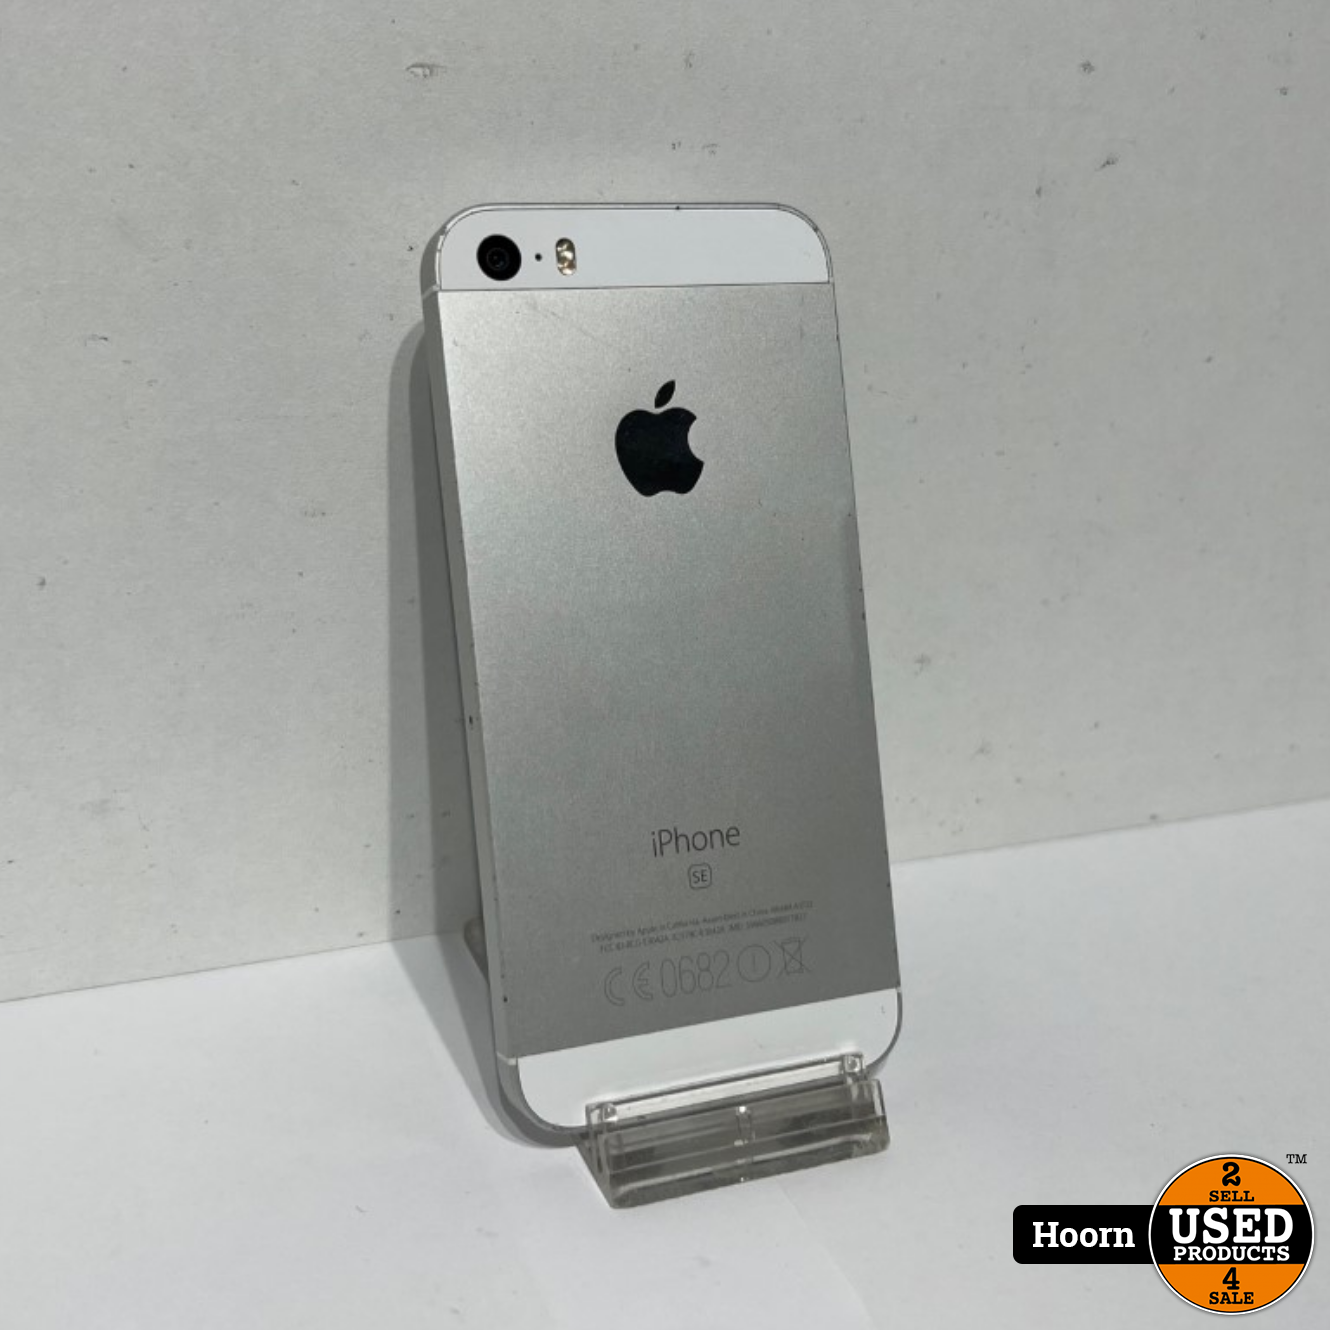 Monetair Bovenstaande Diplomatieke kwesties Apple iPhone iPhone SE 32GB Silver Los Toestel Accu: 82% - Used Products  Hoorn